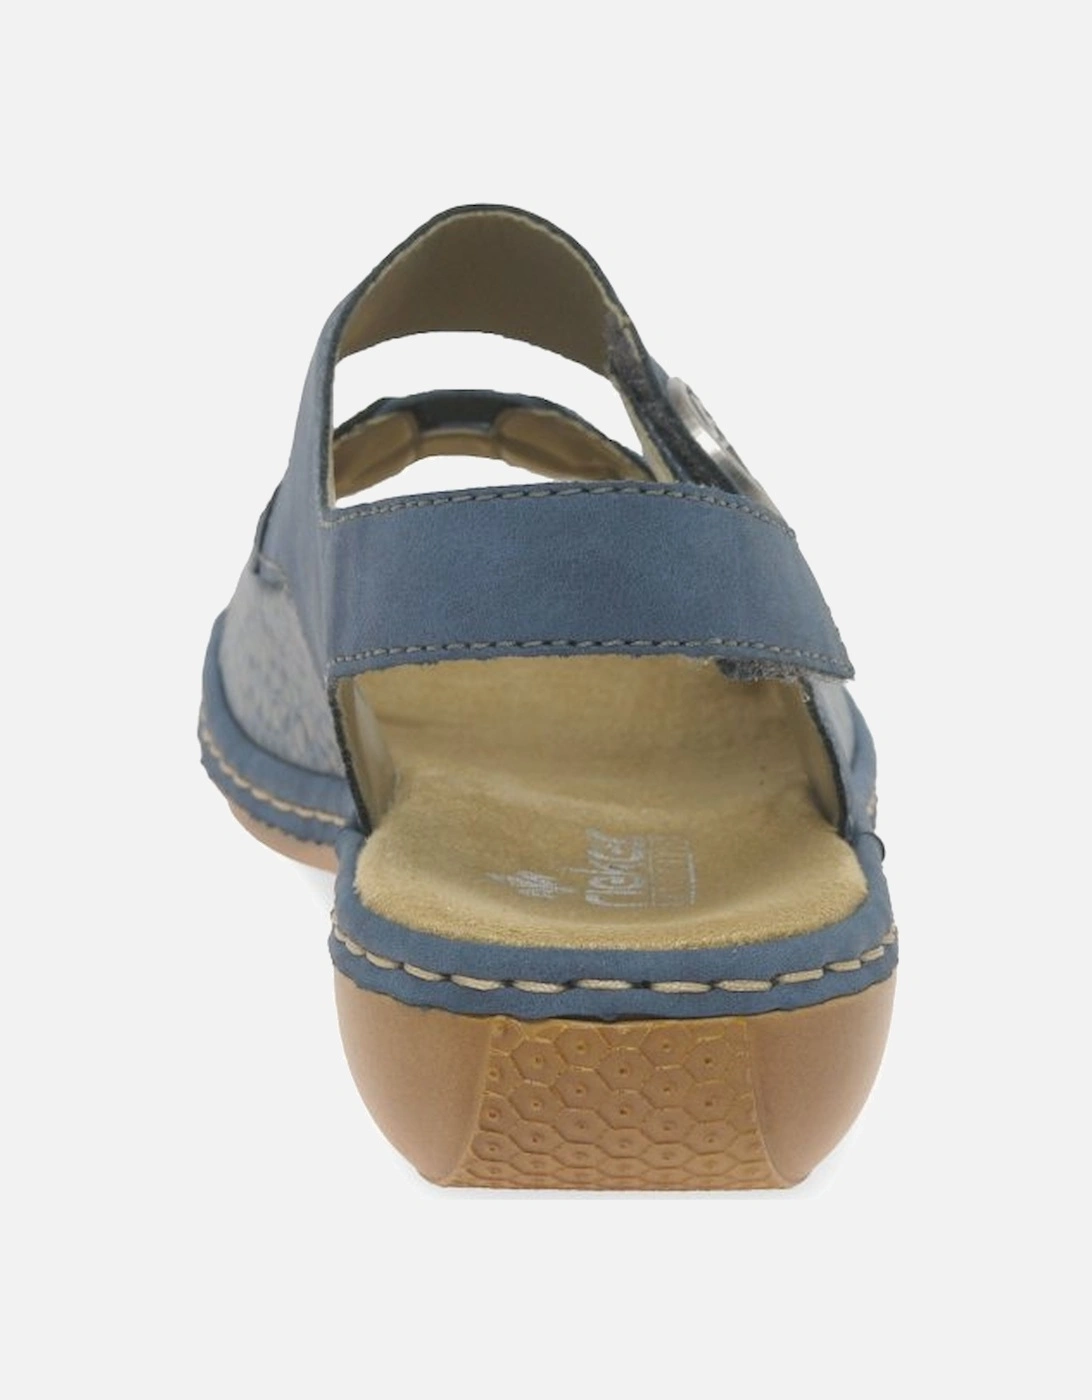 Aleria Womens Sandals